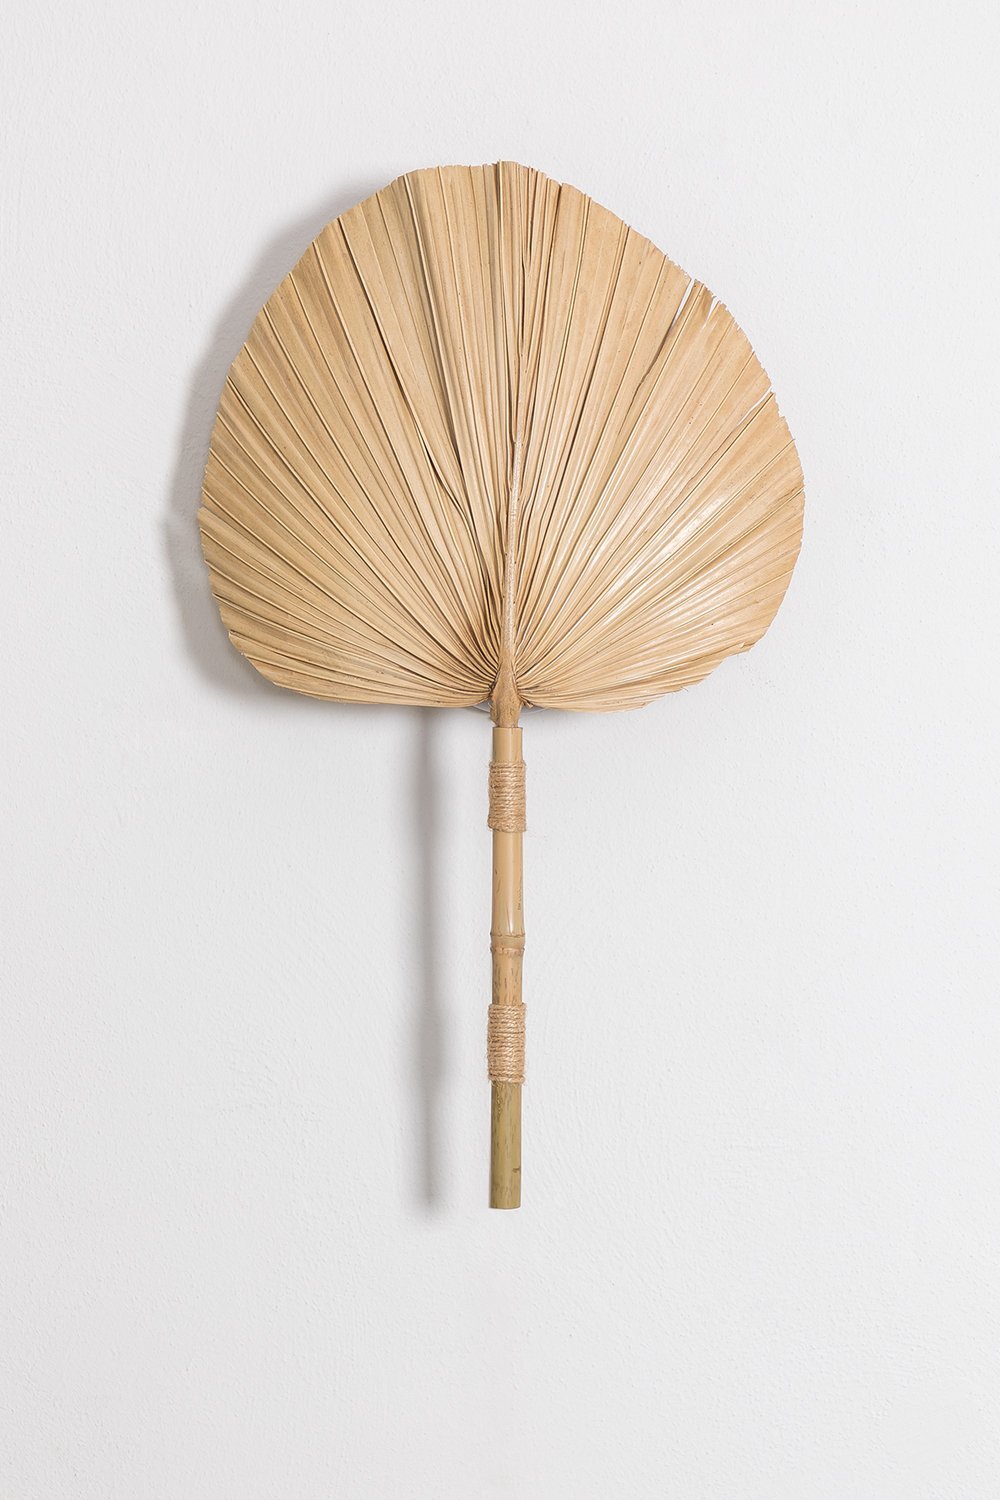 Pruyans bamboe wandlamp, galerij beeld 1